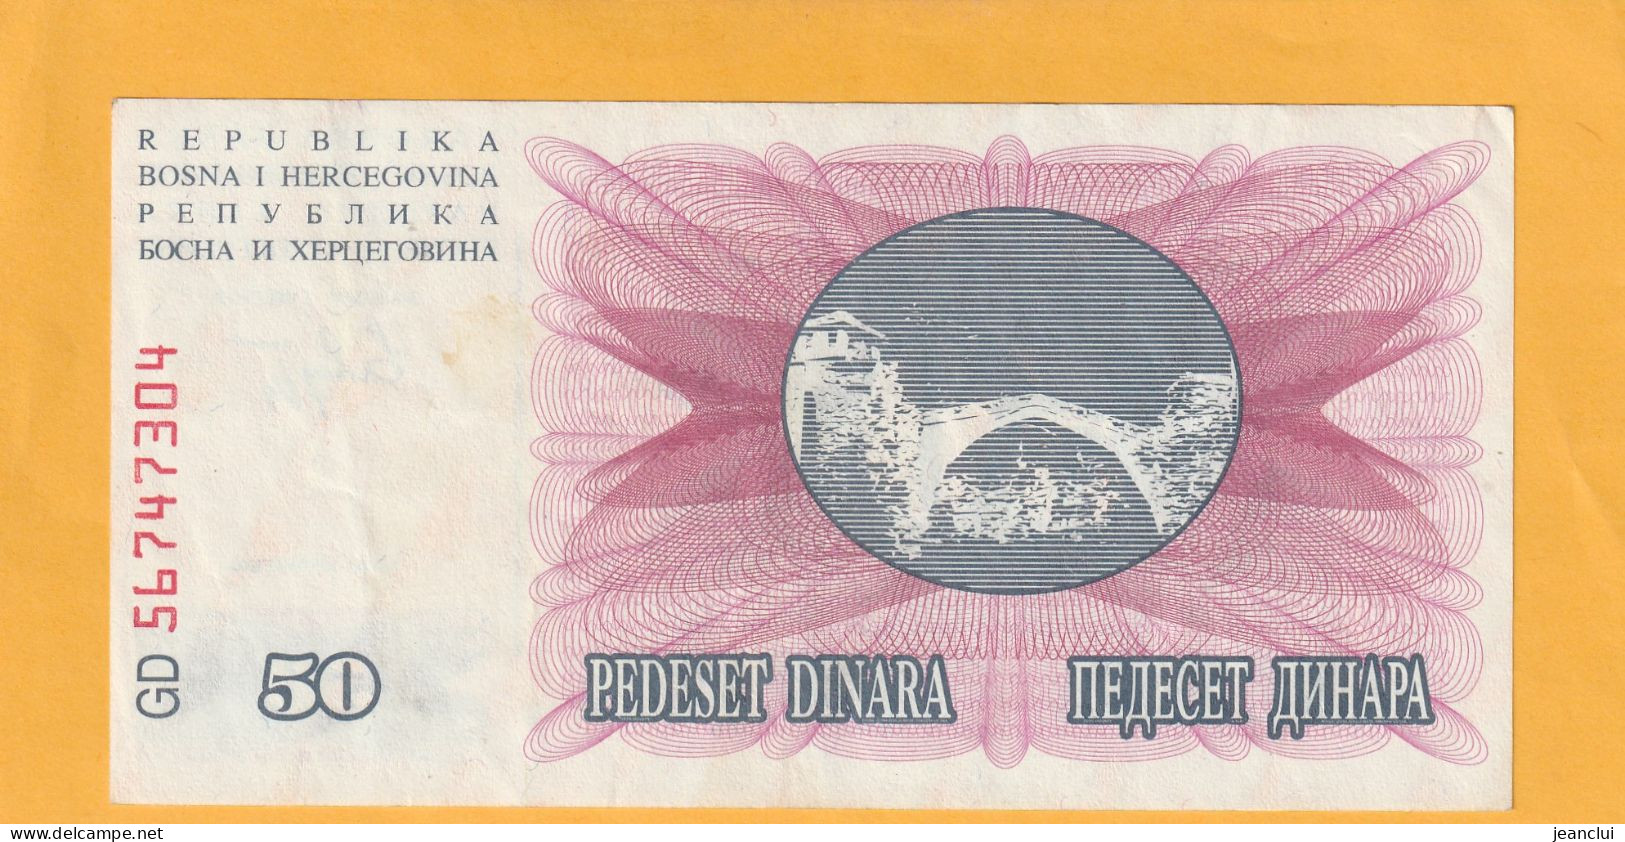 NARODNA BANKA BOSNE I HERCEGOVINE  .  50 DINARA  . 1-7-1992  .  N°  56 74 7304  .  2 SCANNES  .  BILLET EN TRES BEL ETAT - Bosnien-Herzegowina